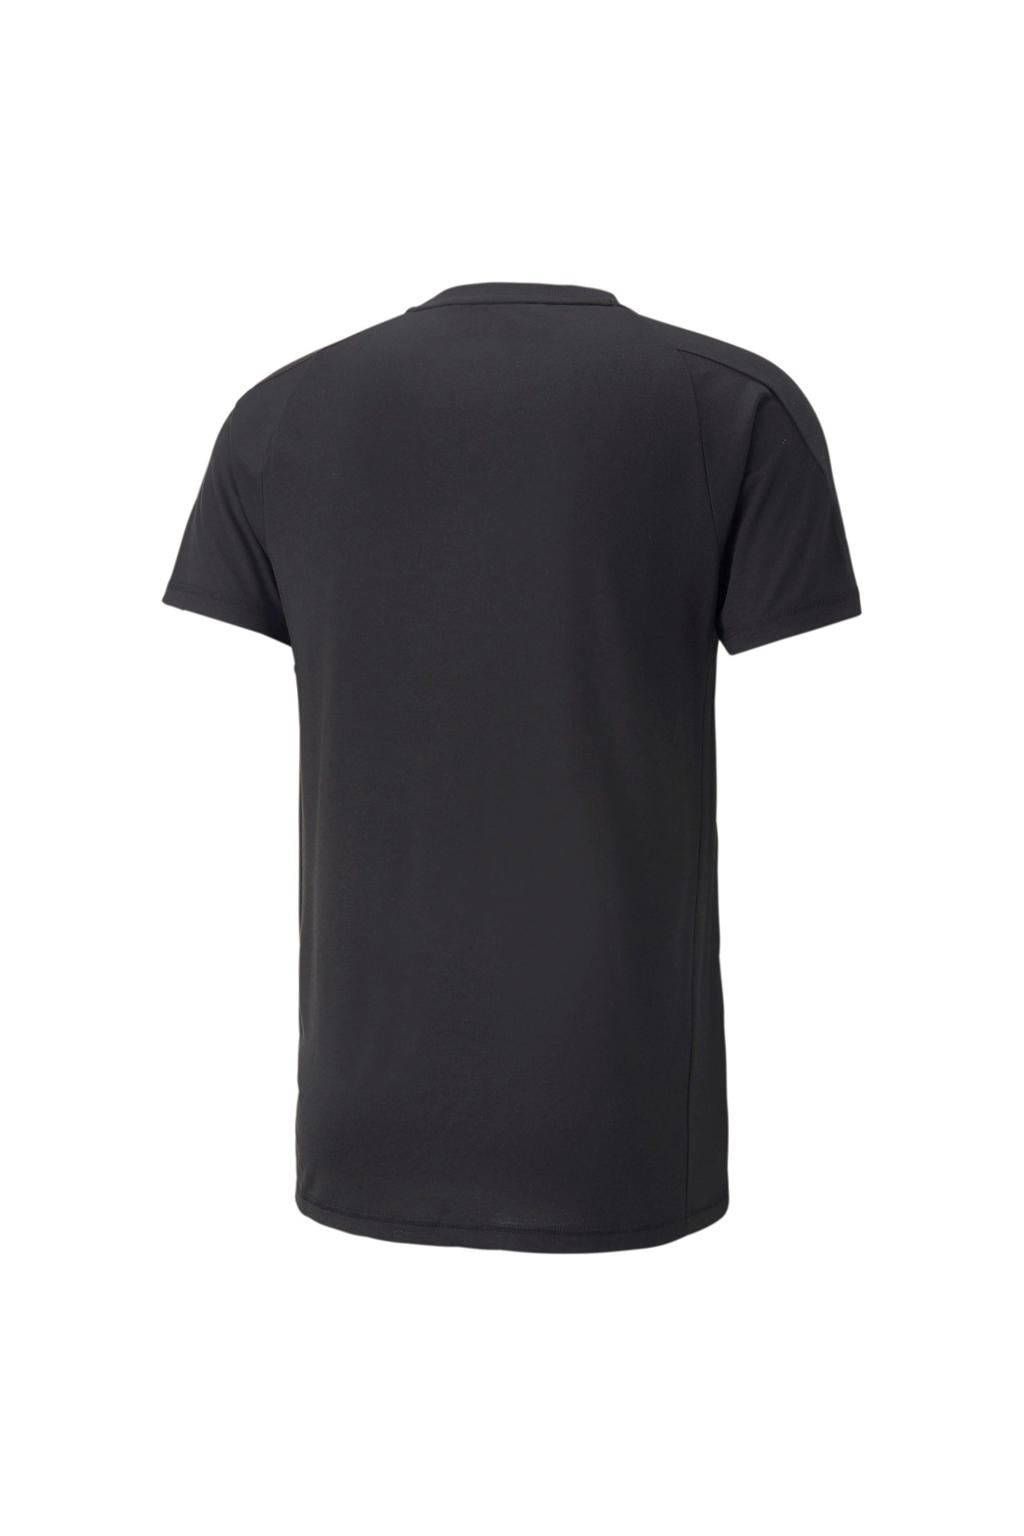 Zwarte heren Puma sport T-shirt van gerecycled polyester met logo dessin, korte mouwen en ronde hals